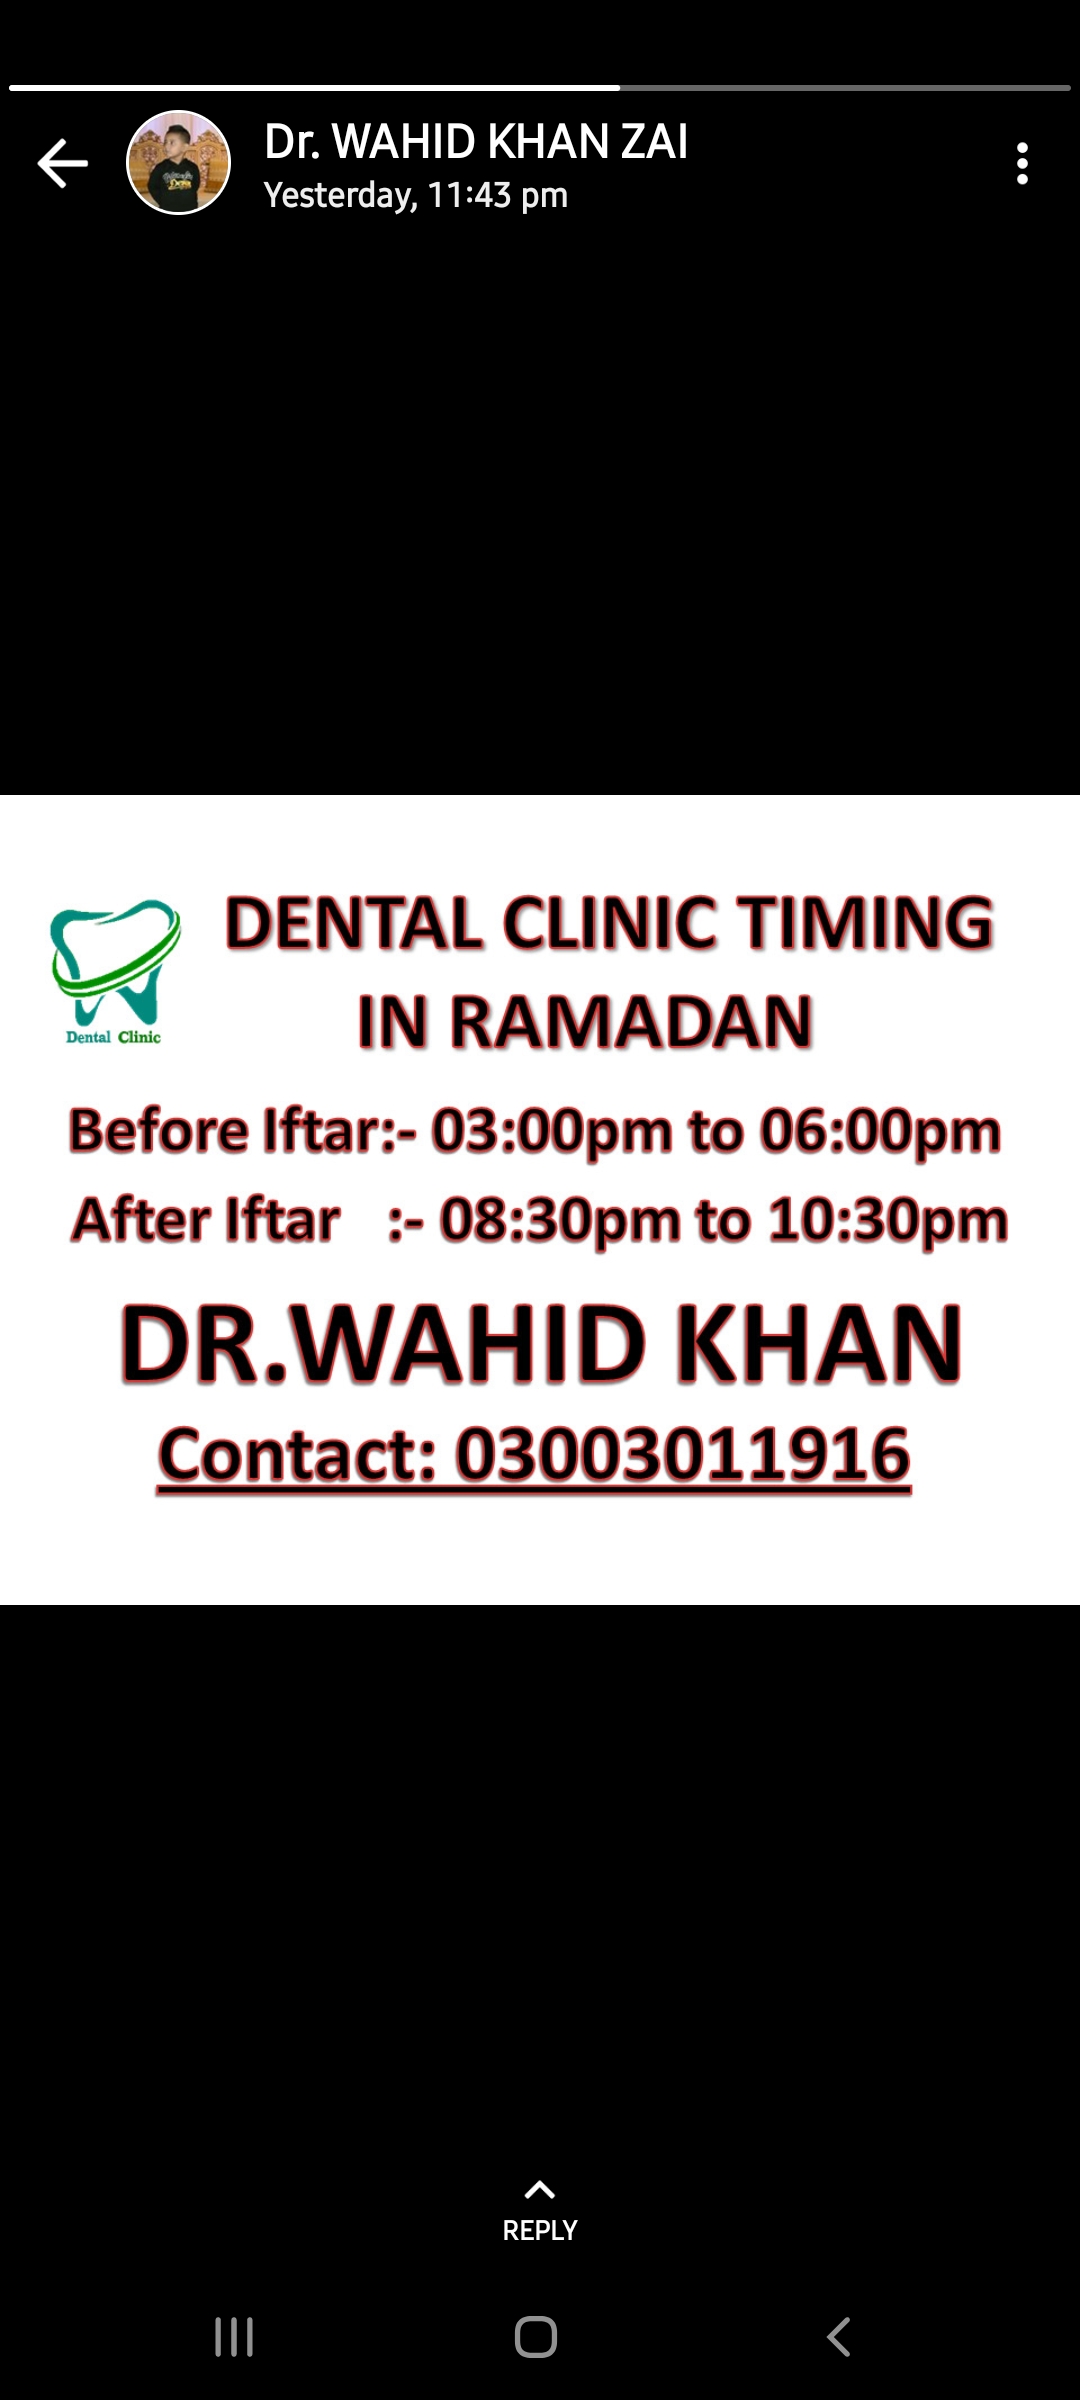 Dental Clinic - DR. WAHID KHAN ZAI